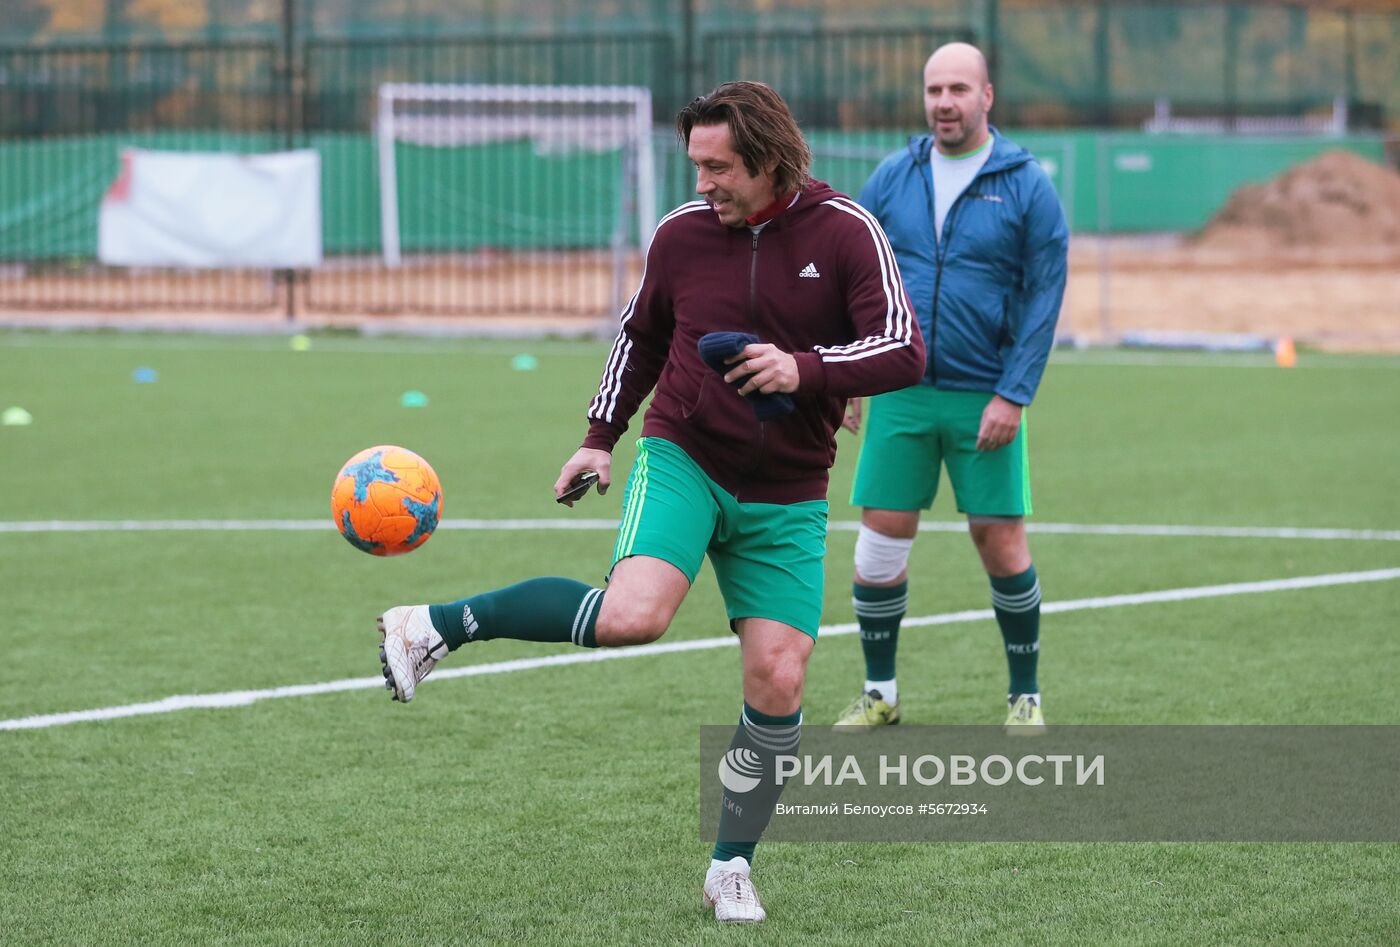 Благотворительный футбольный турнир С. Игнашевича